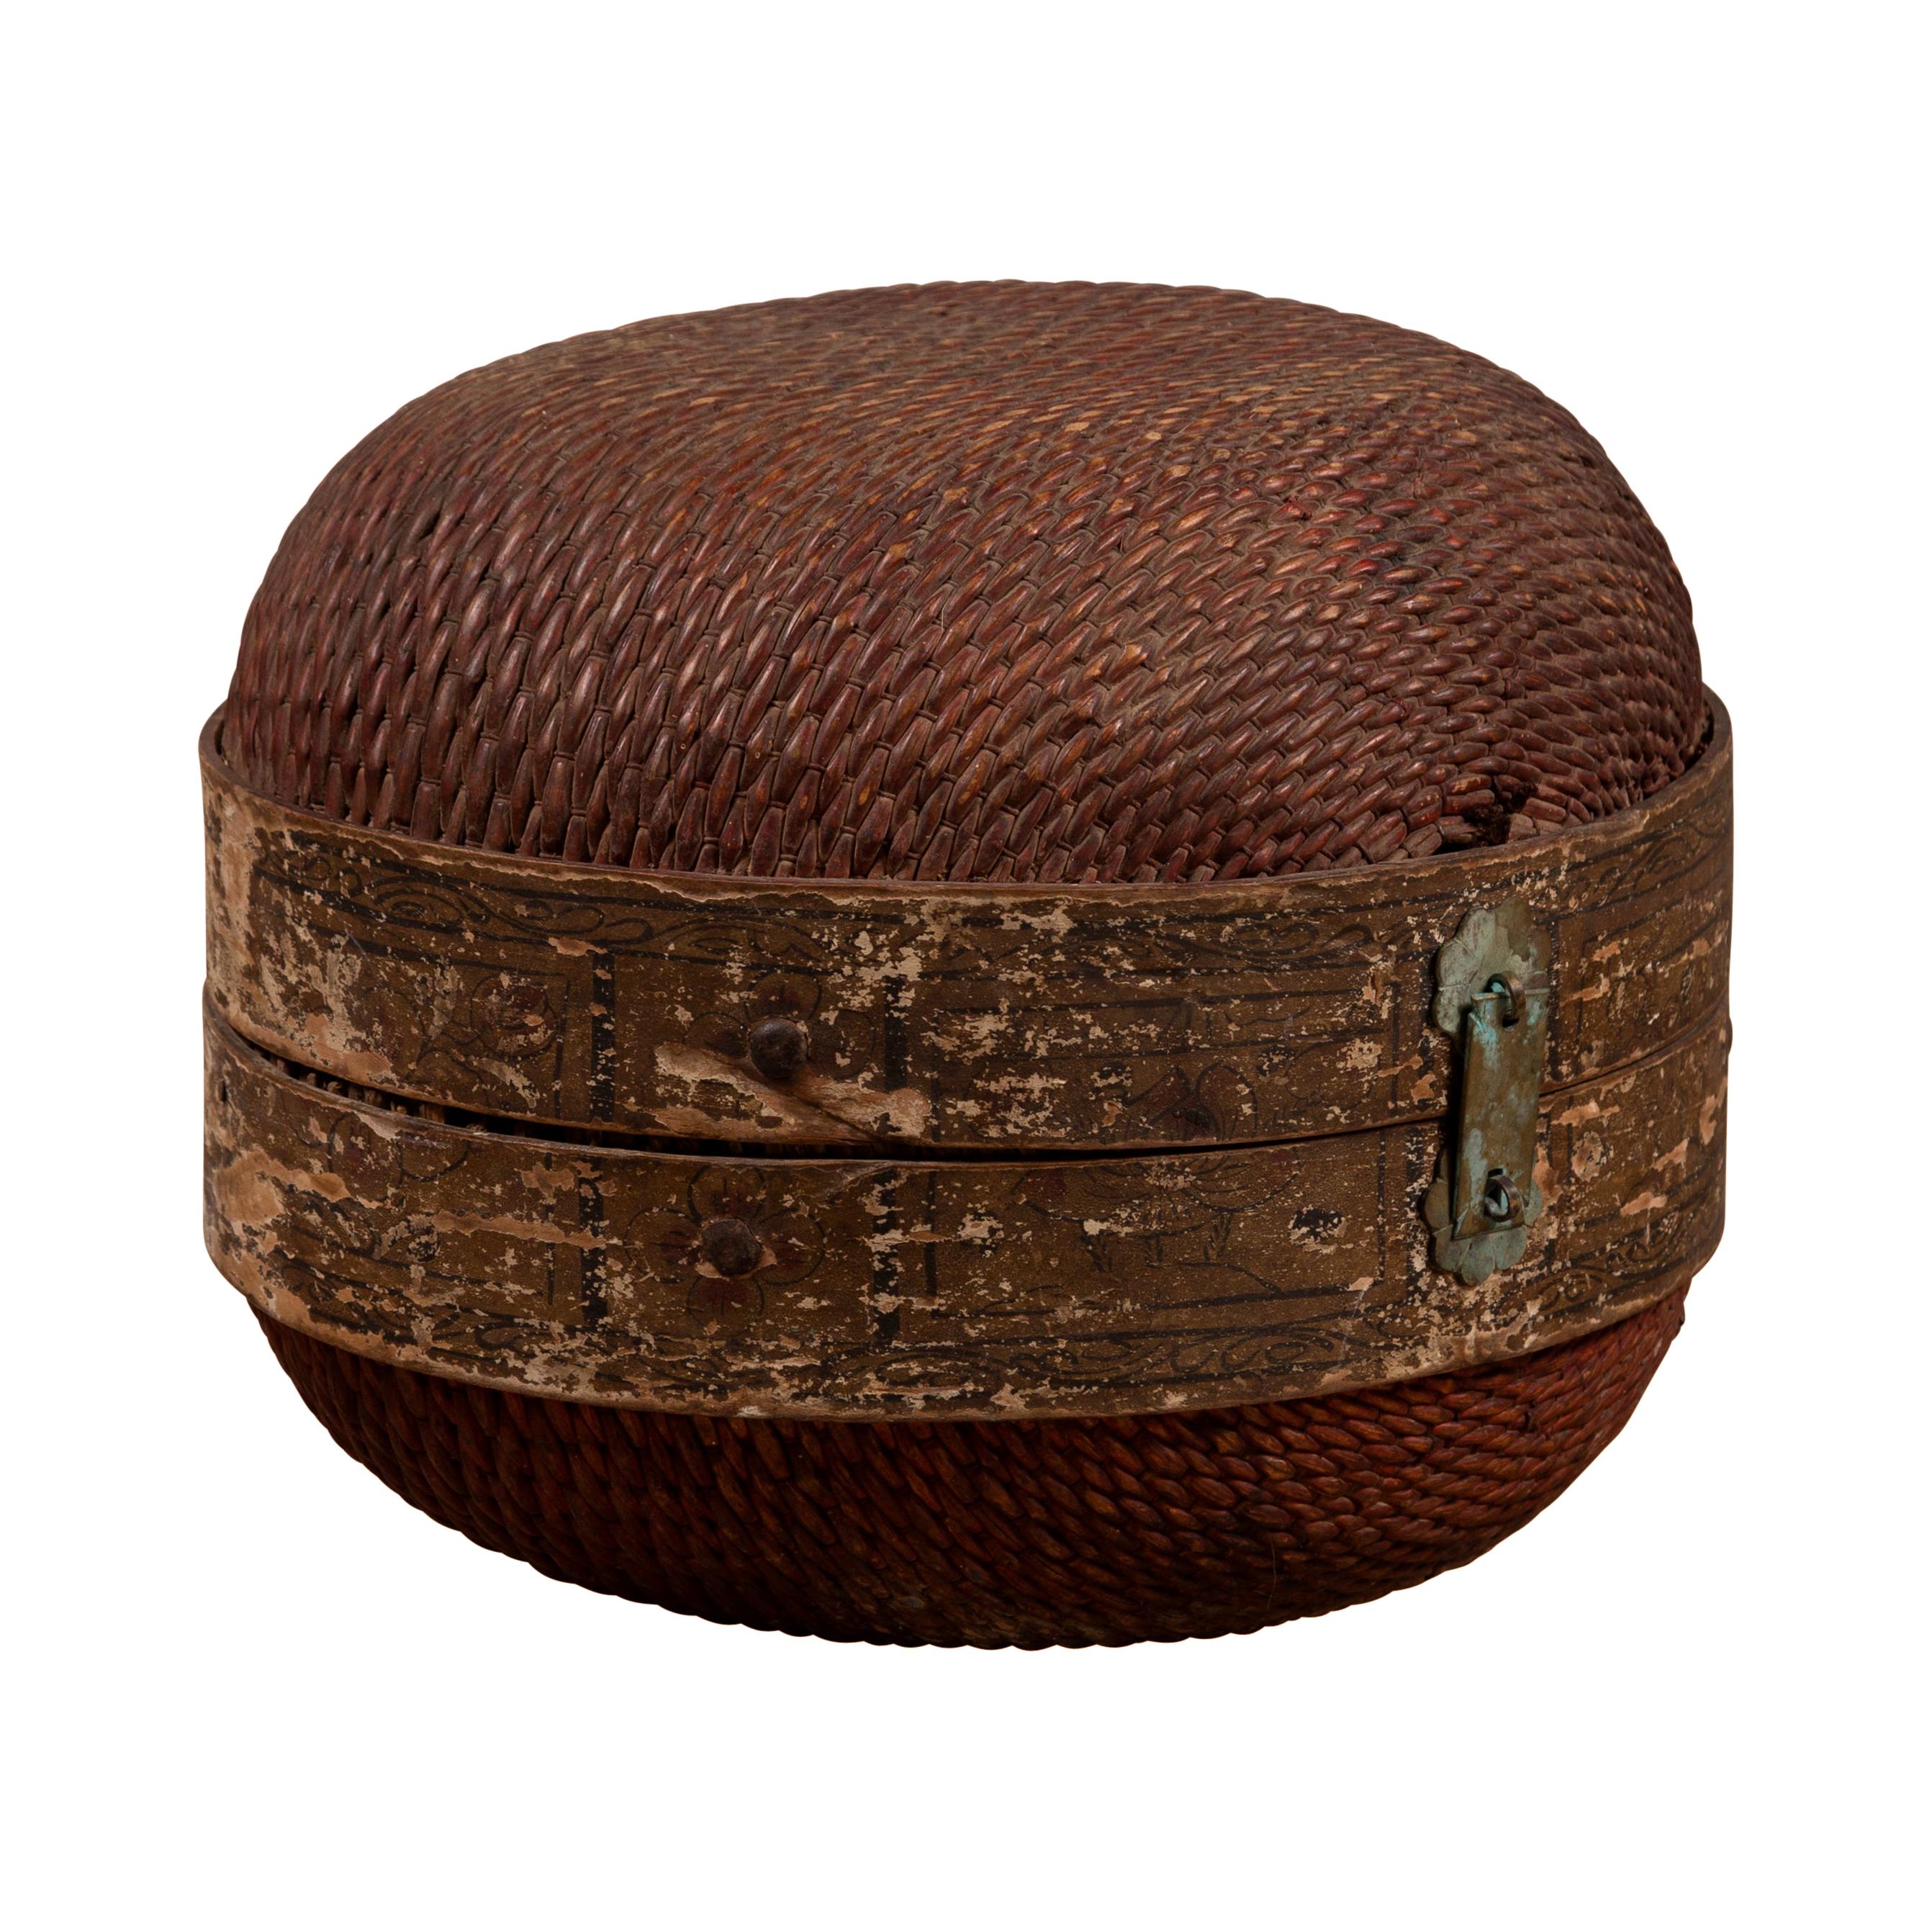 Chinesische kreisförmige Rattan-Hutschachtel aus der Mitte des Jahrhunderts mit verwitterter Patina